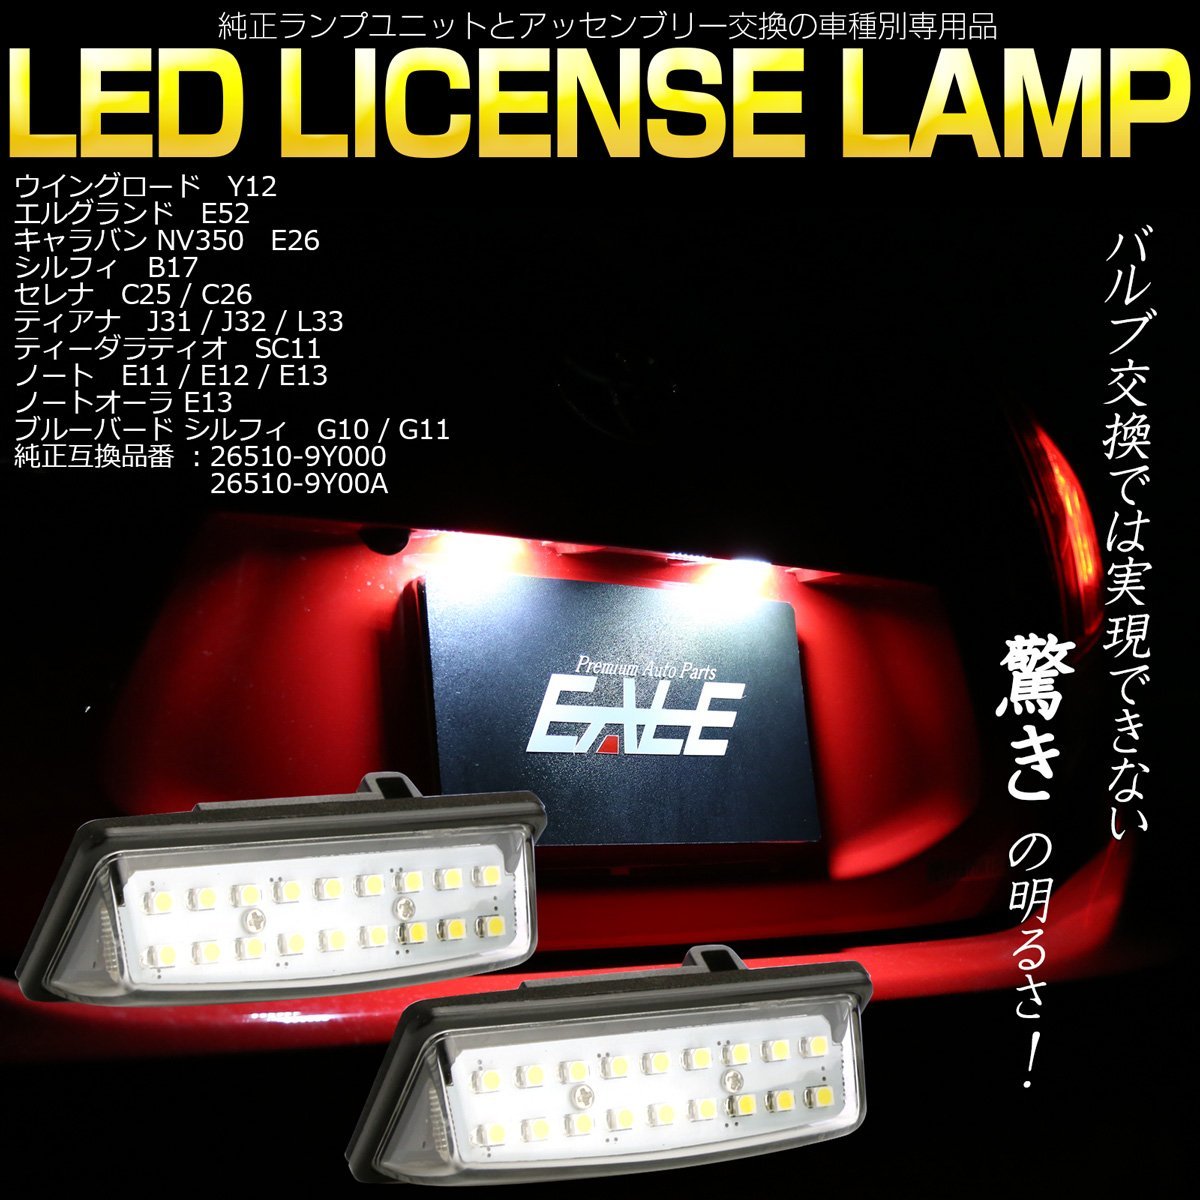 E52 エルグランド C25/C26 セレナ LEDライセンスランプ ナンバー灯 R-209_画像1